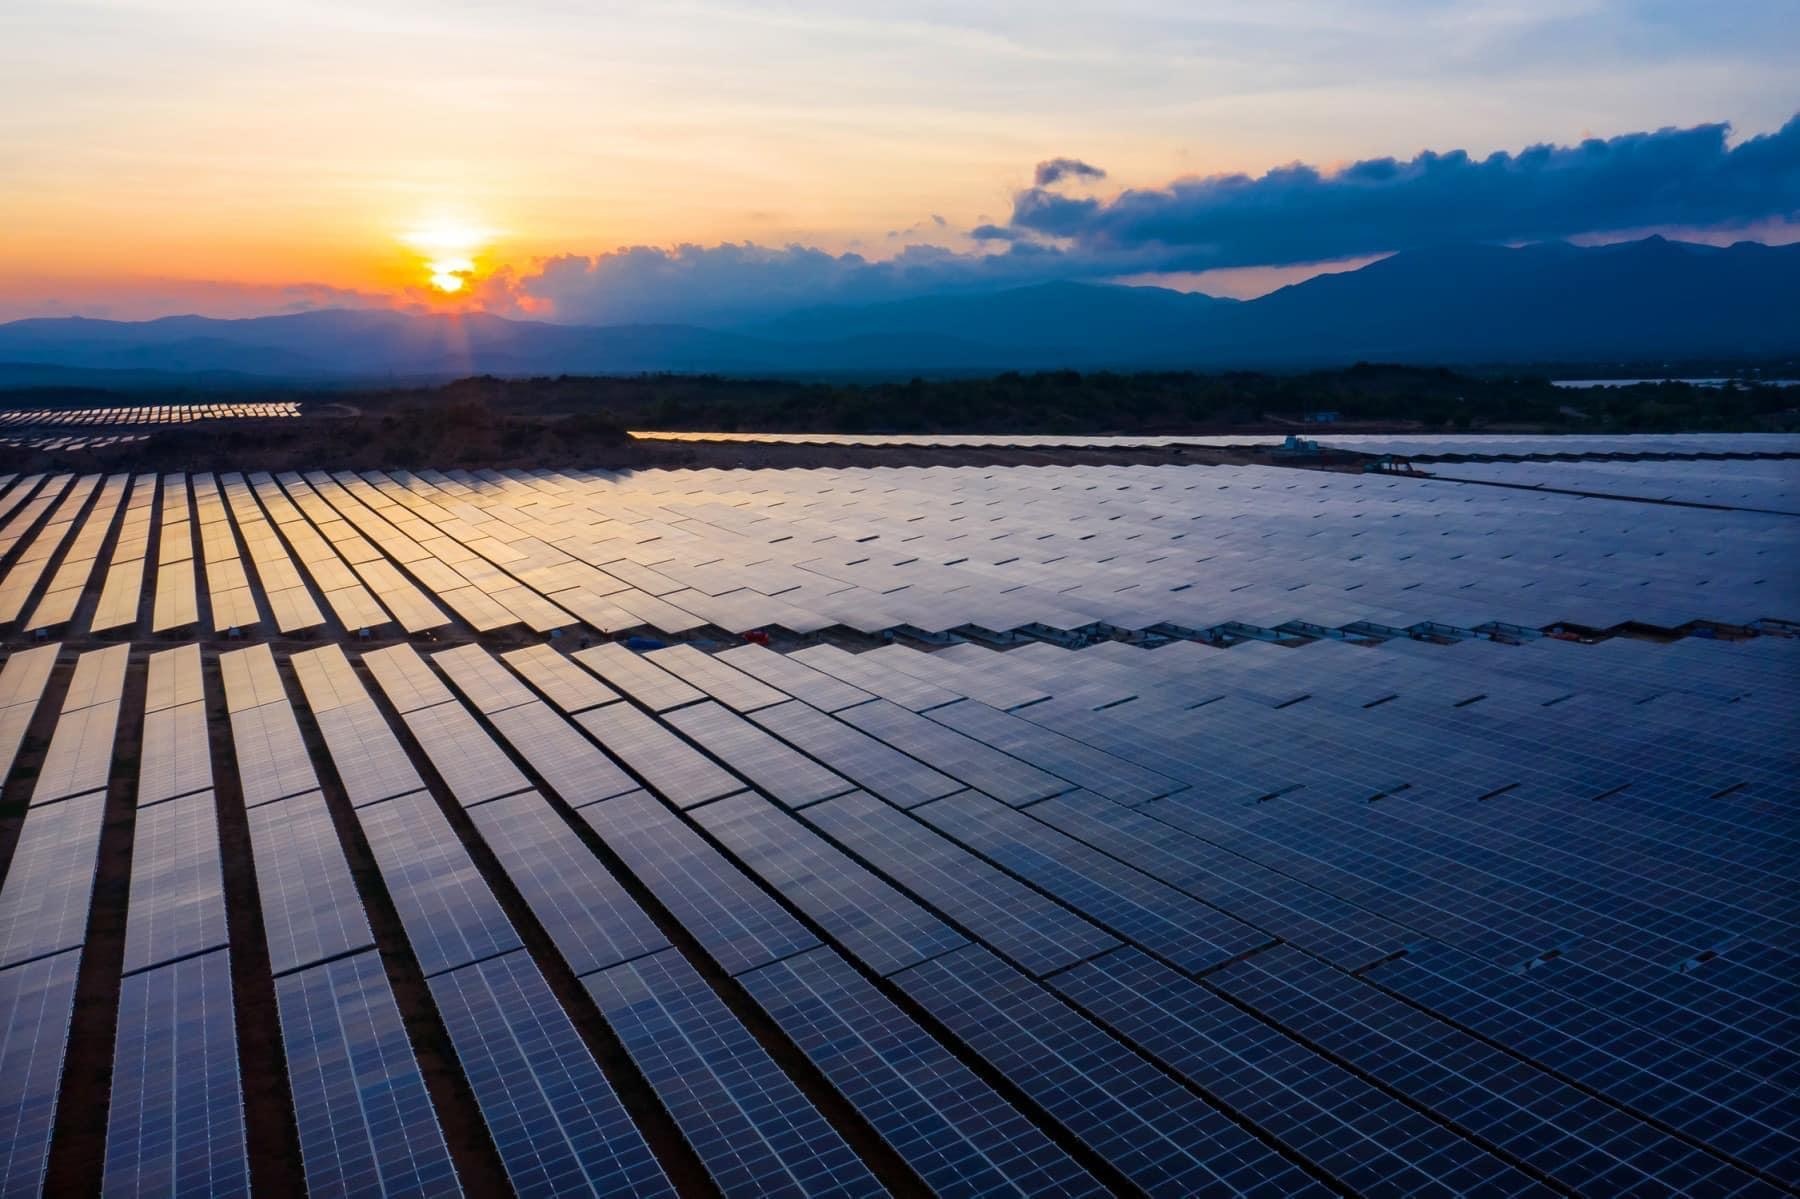 Dự án điện mặt trời tại Ninh Thuận được thông báo giảm 40% công suất phát điện - ảnh 2